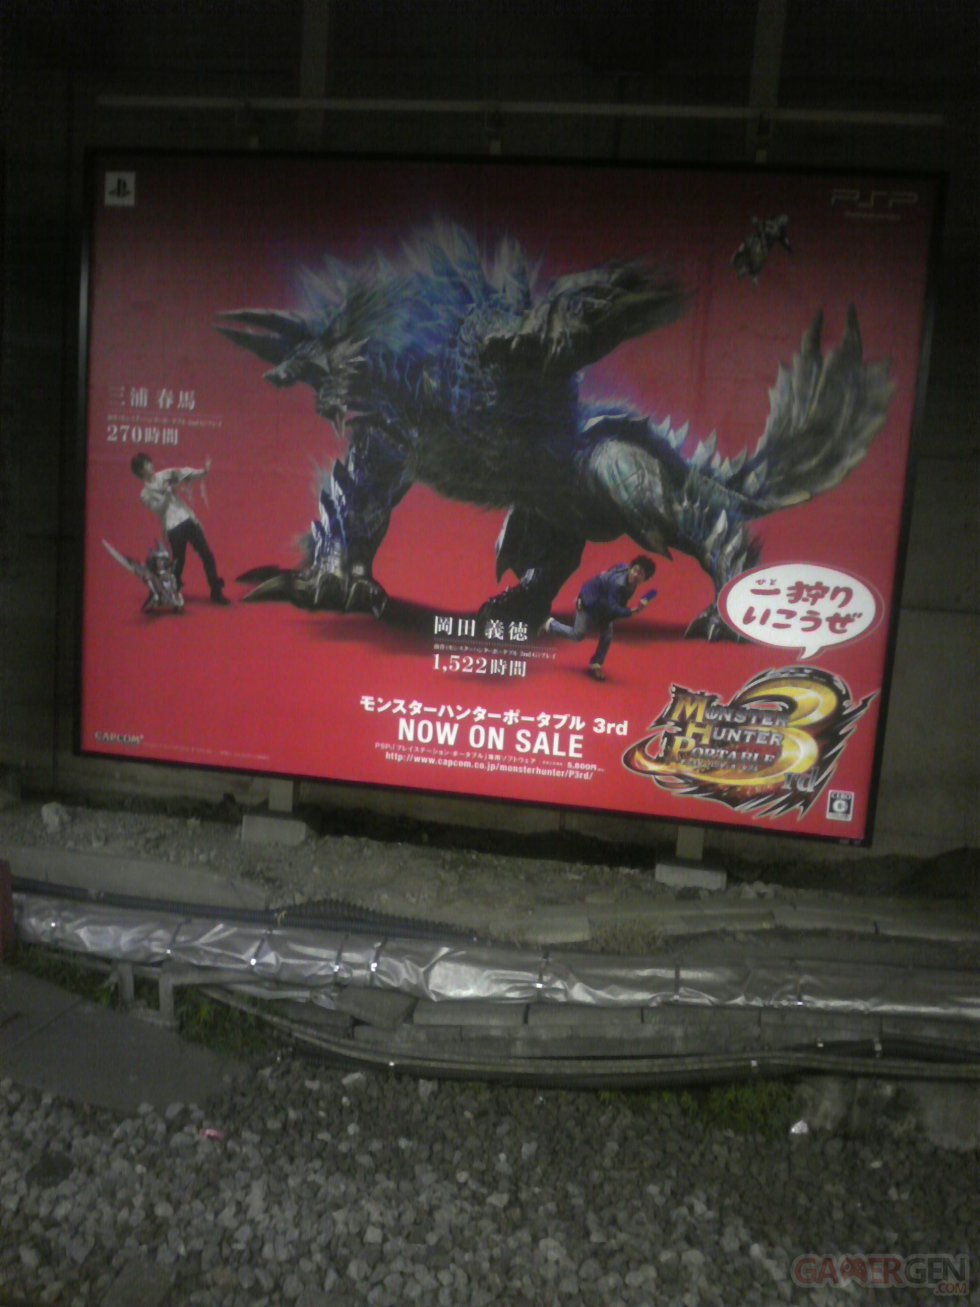 Monster Hunter Portable 3rd Japon PSP Japon Tokyo (8)